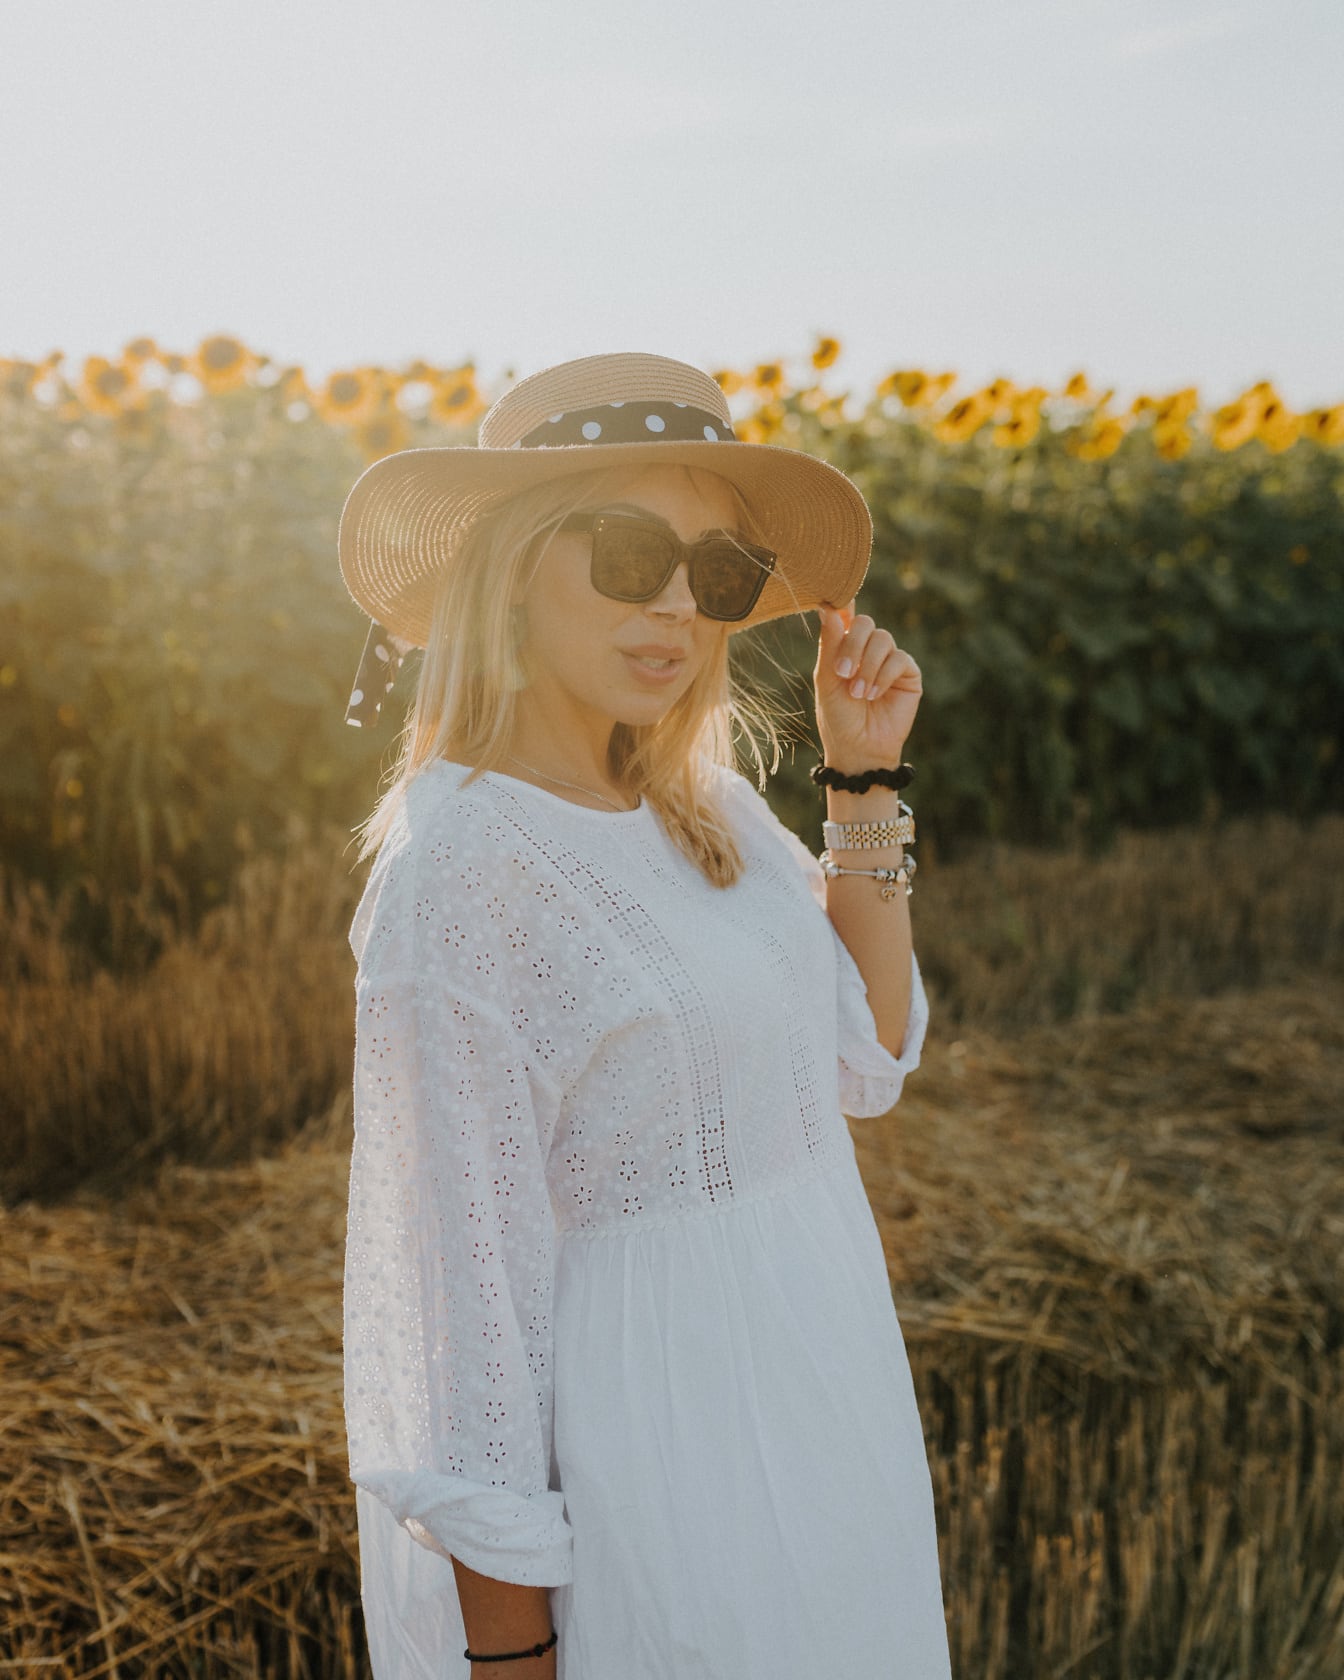 Селска жена в бяла народна рокля и шапка в поле от слънчогледи в слънчев летен ден